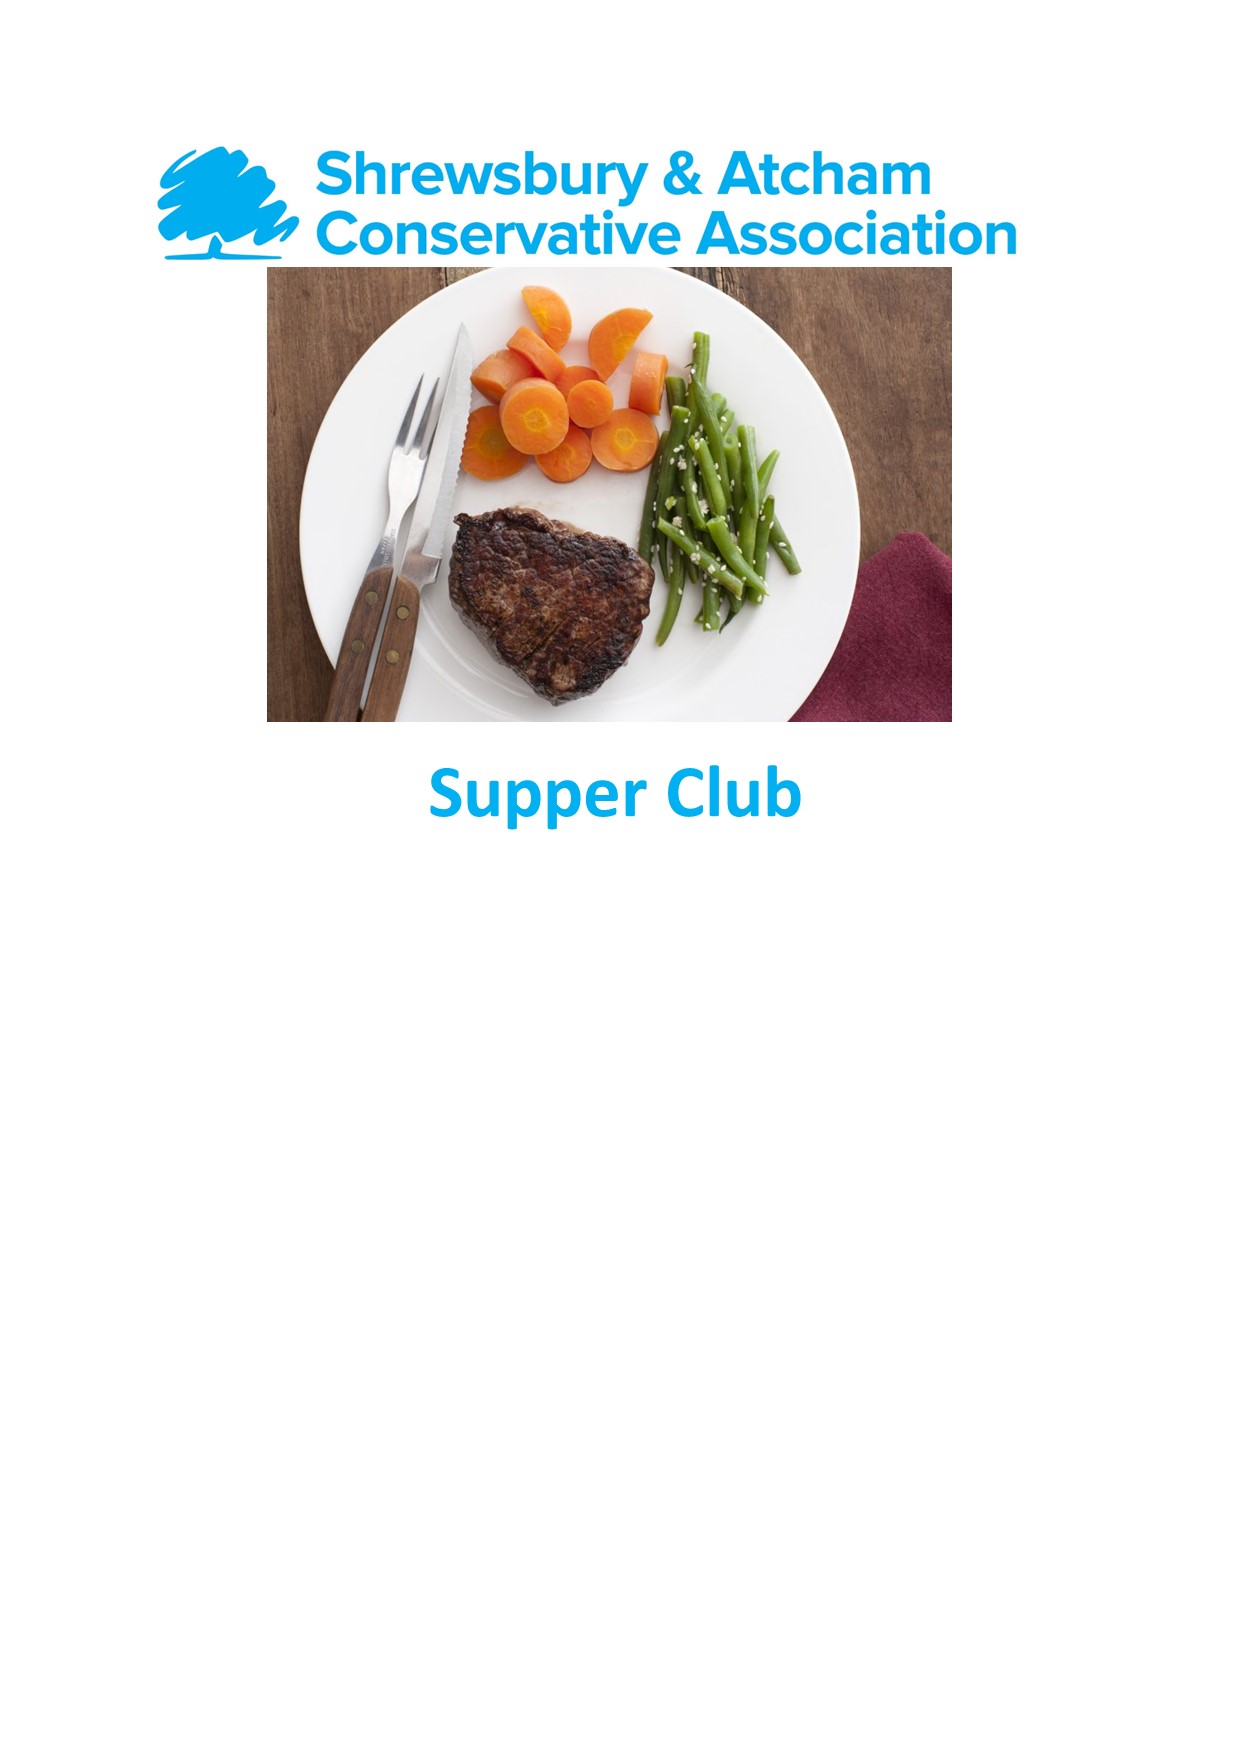 Supper Club promo